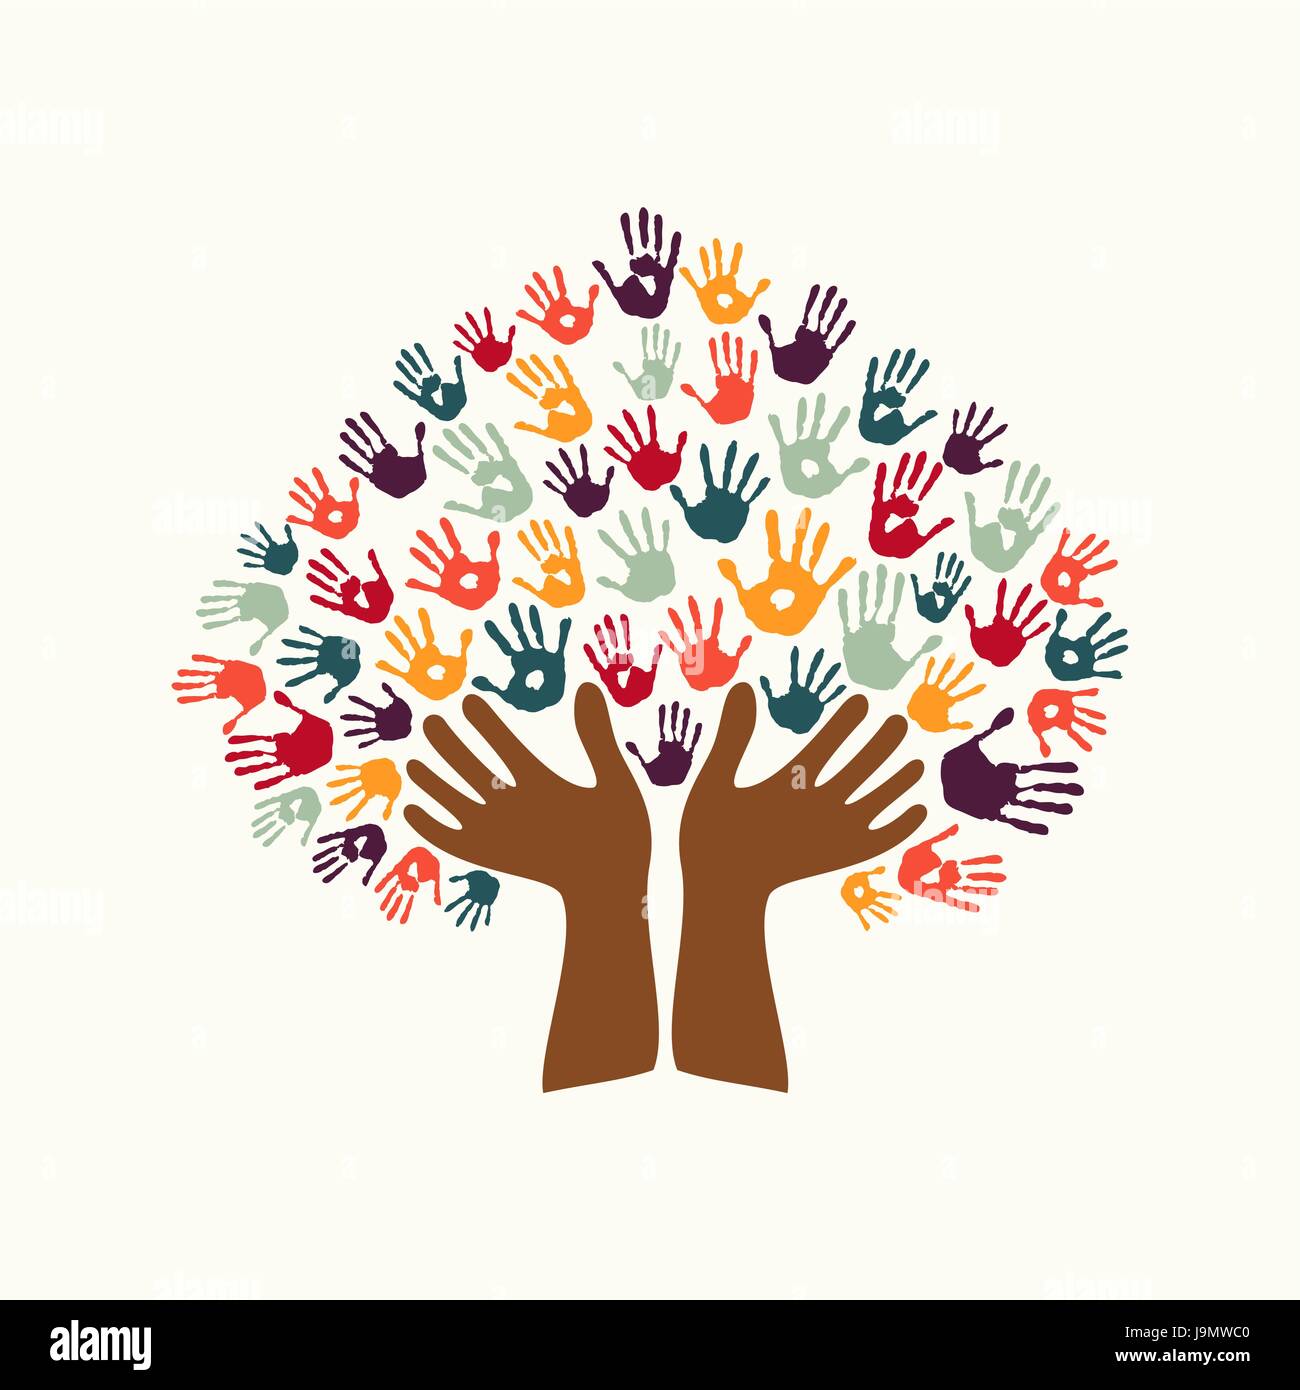 Handprint umano simbolo di albero con le mani di coloratissimi gruppo etnico. Cultura varia concetto illustrazione per organizzazione aiutano, ambiente sociale o wor Illustrazione Vettoriale